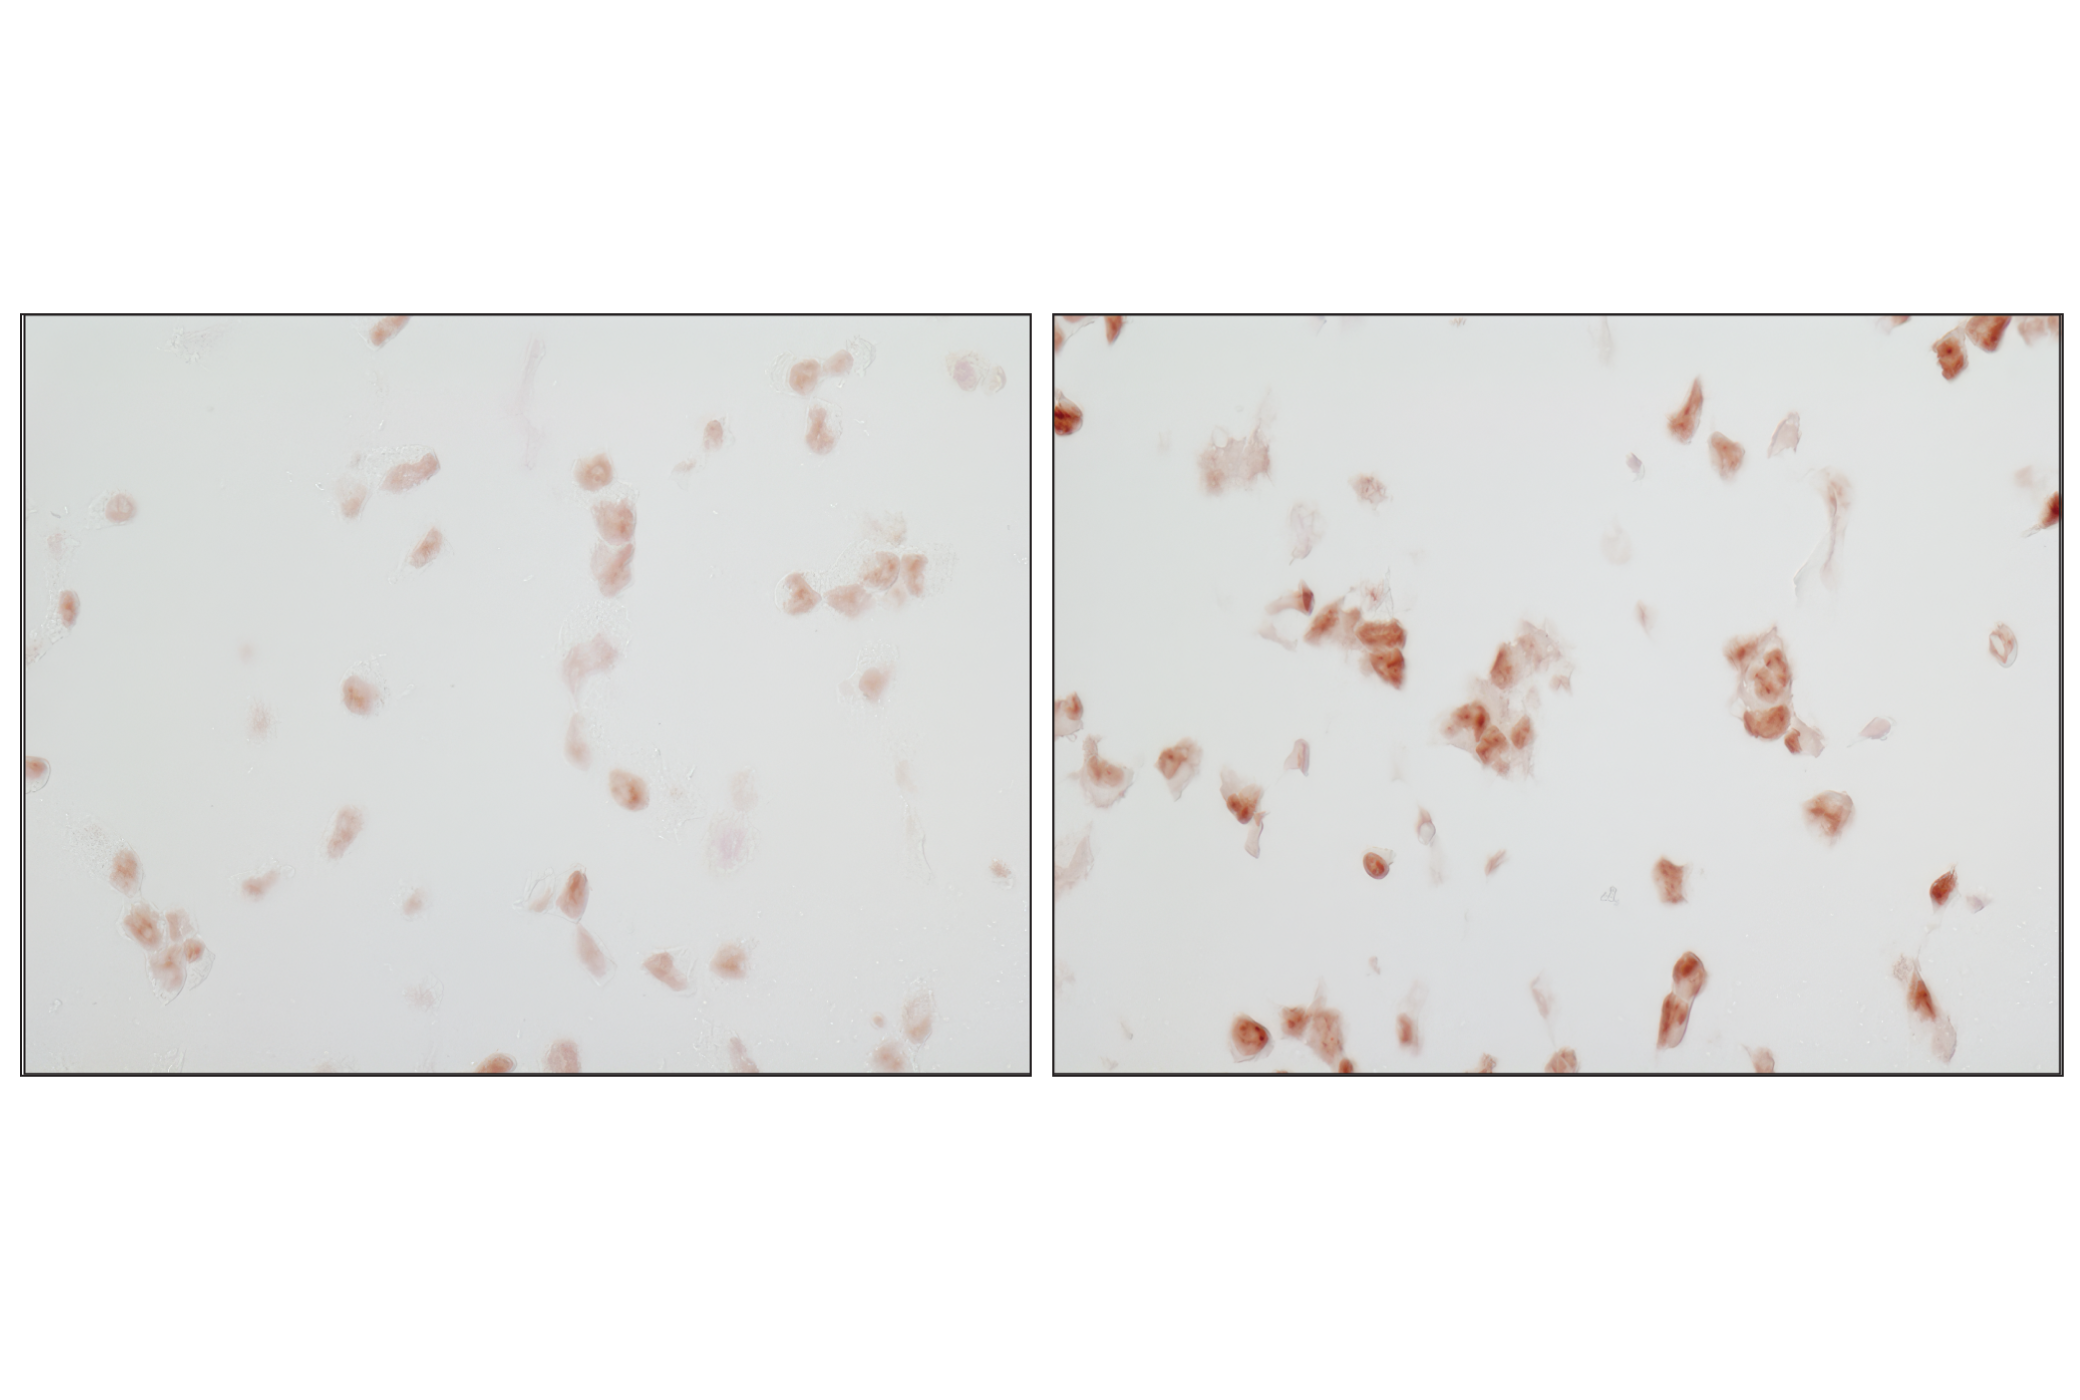  Image 9: PhosphoPlus® p38 MAPK (Thr180/Tyr182) Antibody Kit